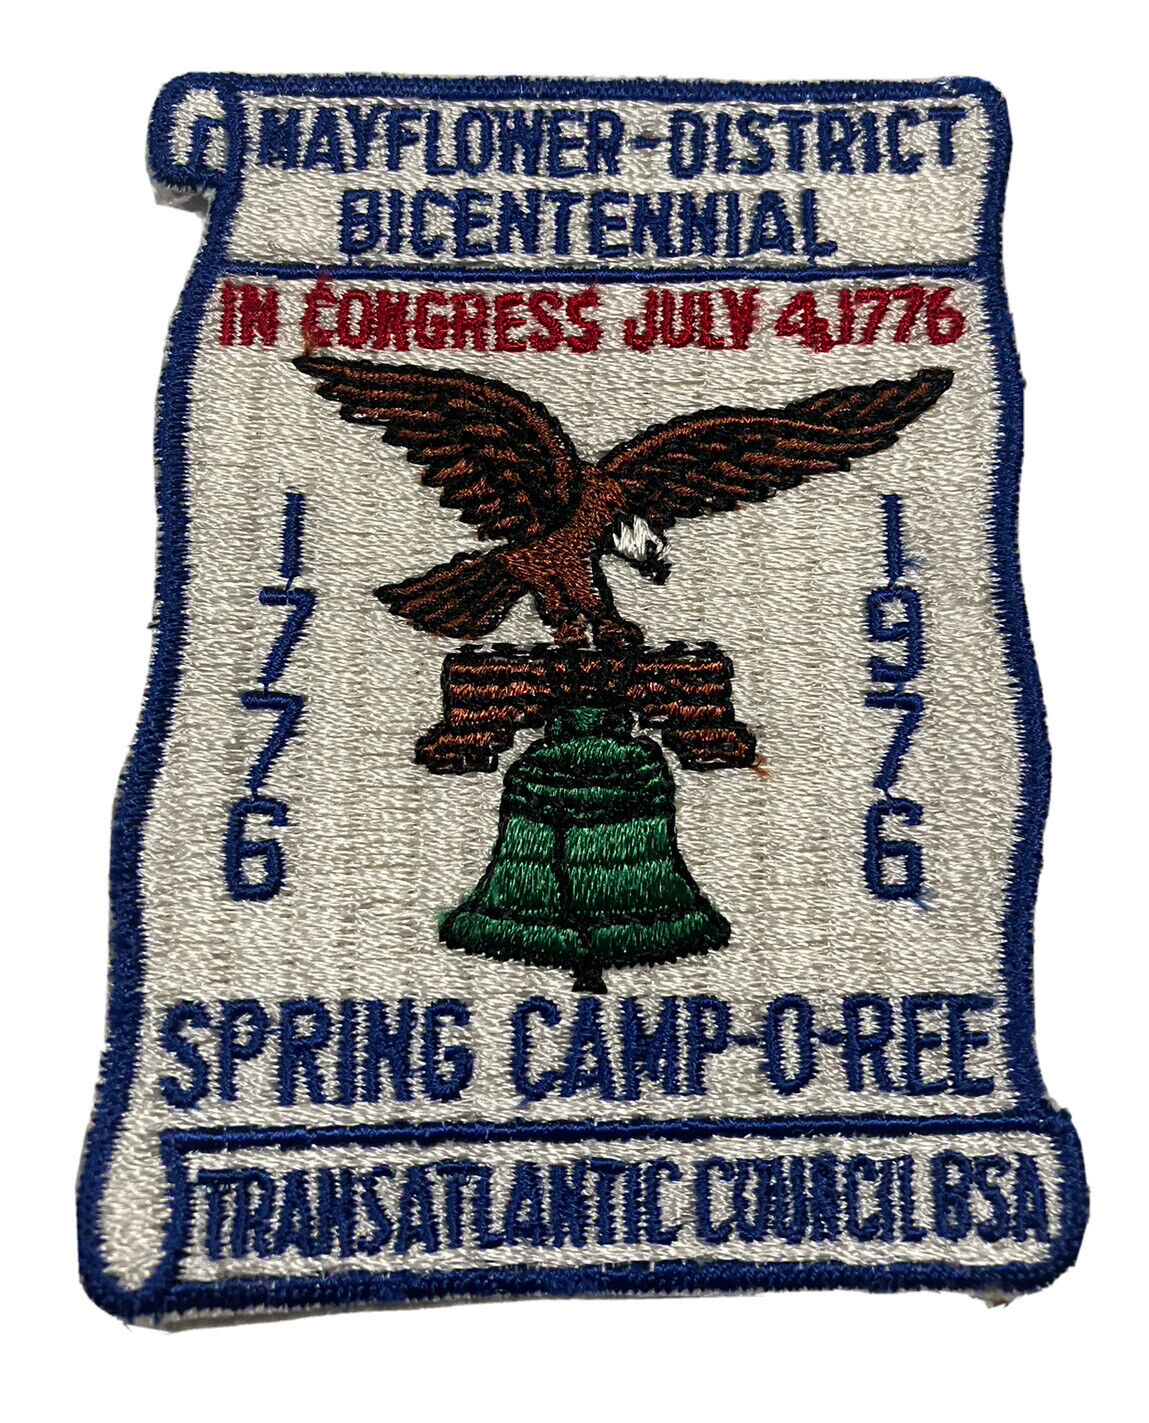 1776 1976 Transatlantic Council Bicentennial Mayflower Camp Patch Boy Scout BSA